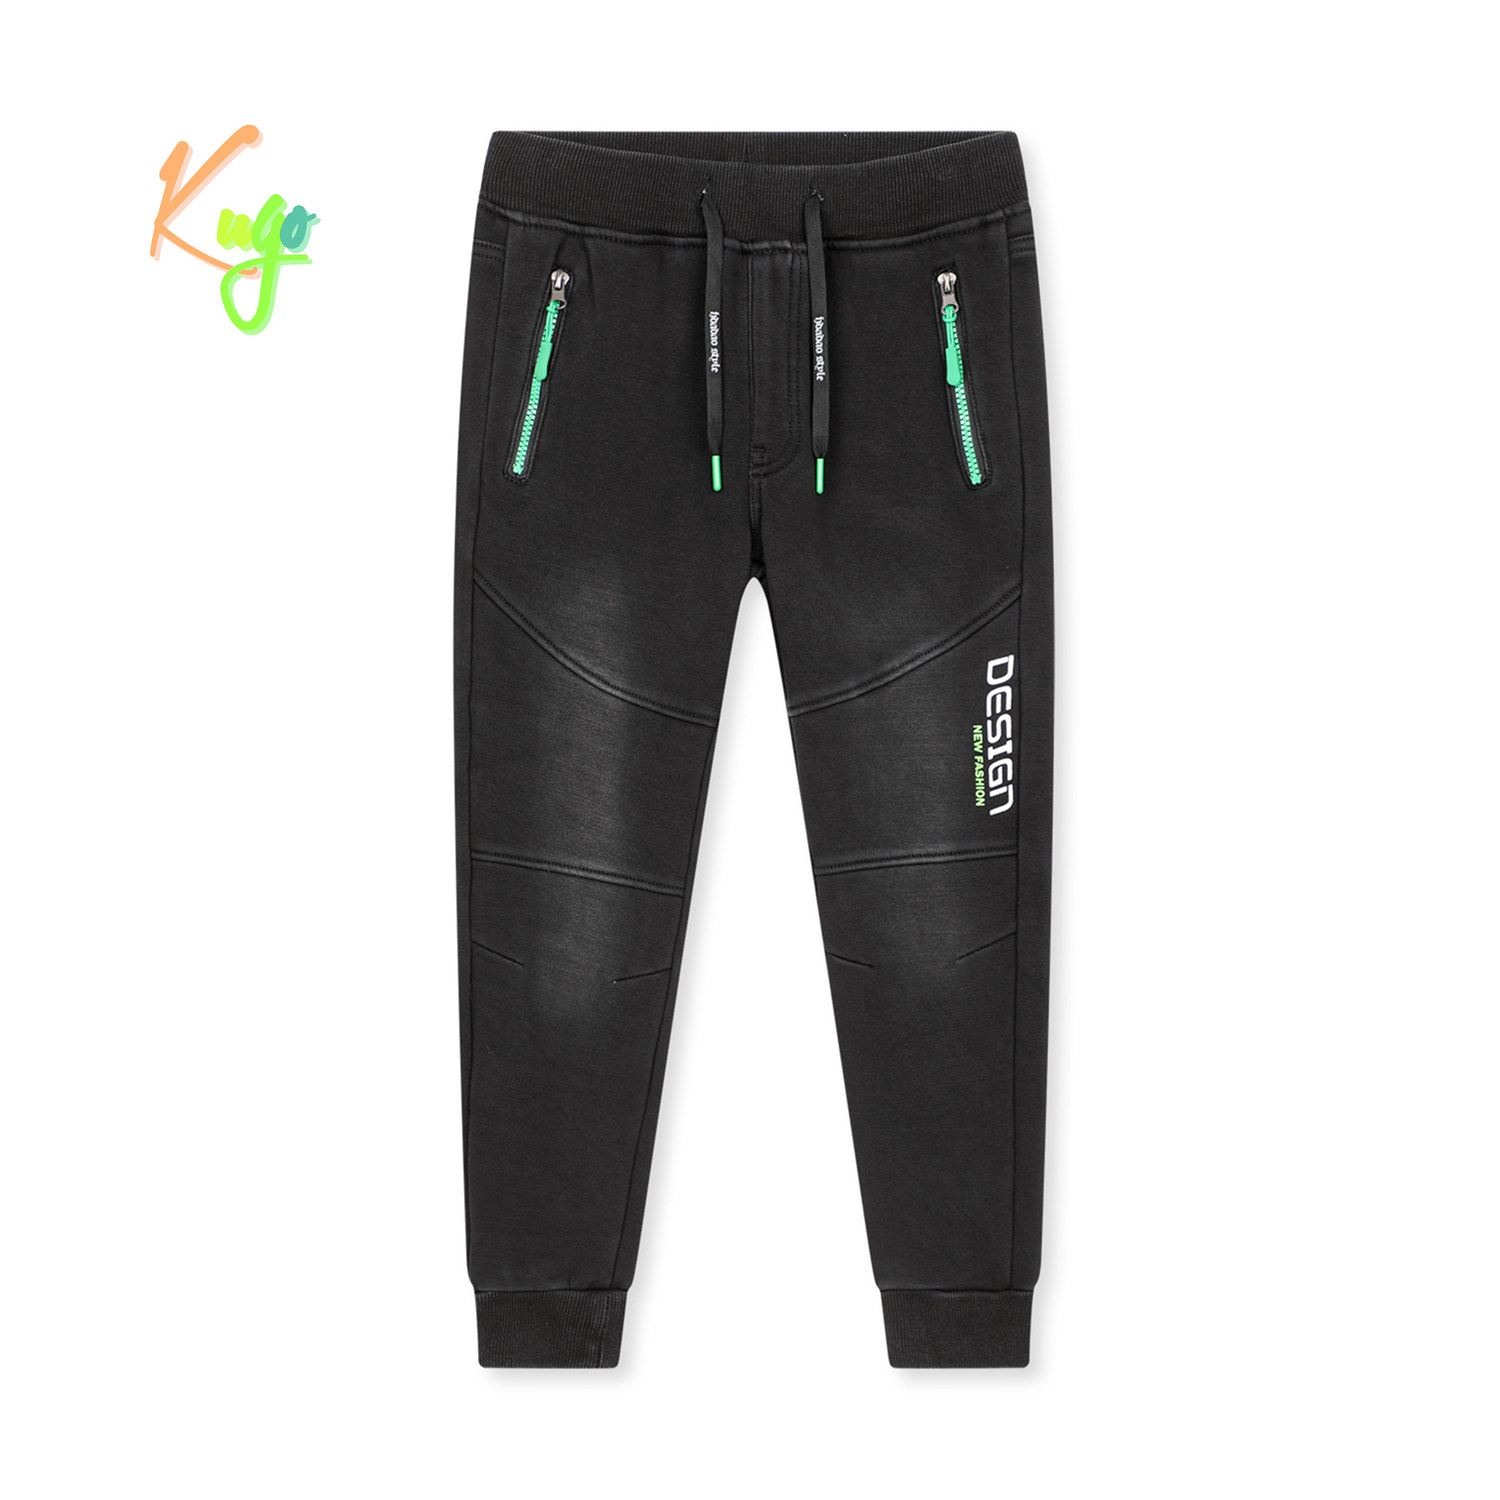 Chlapecké riflové kalhoty/ tepláky, zateplené - KUGO CK0925, černá Barva: Černá, Velikost: 176